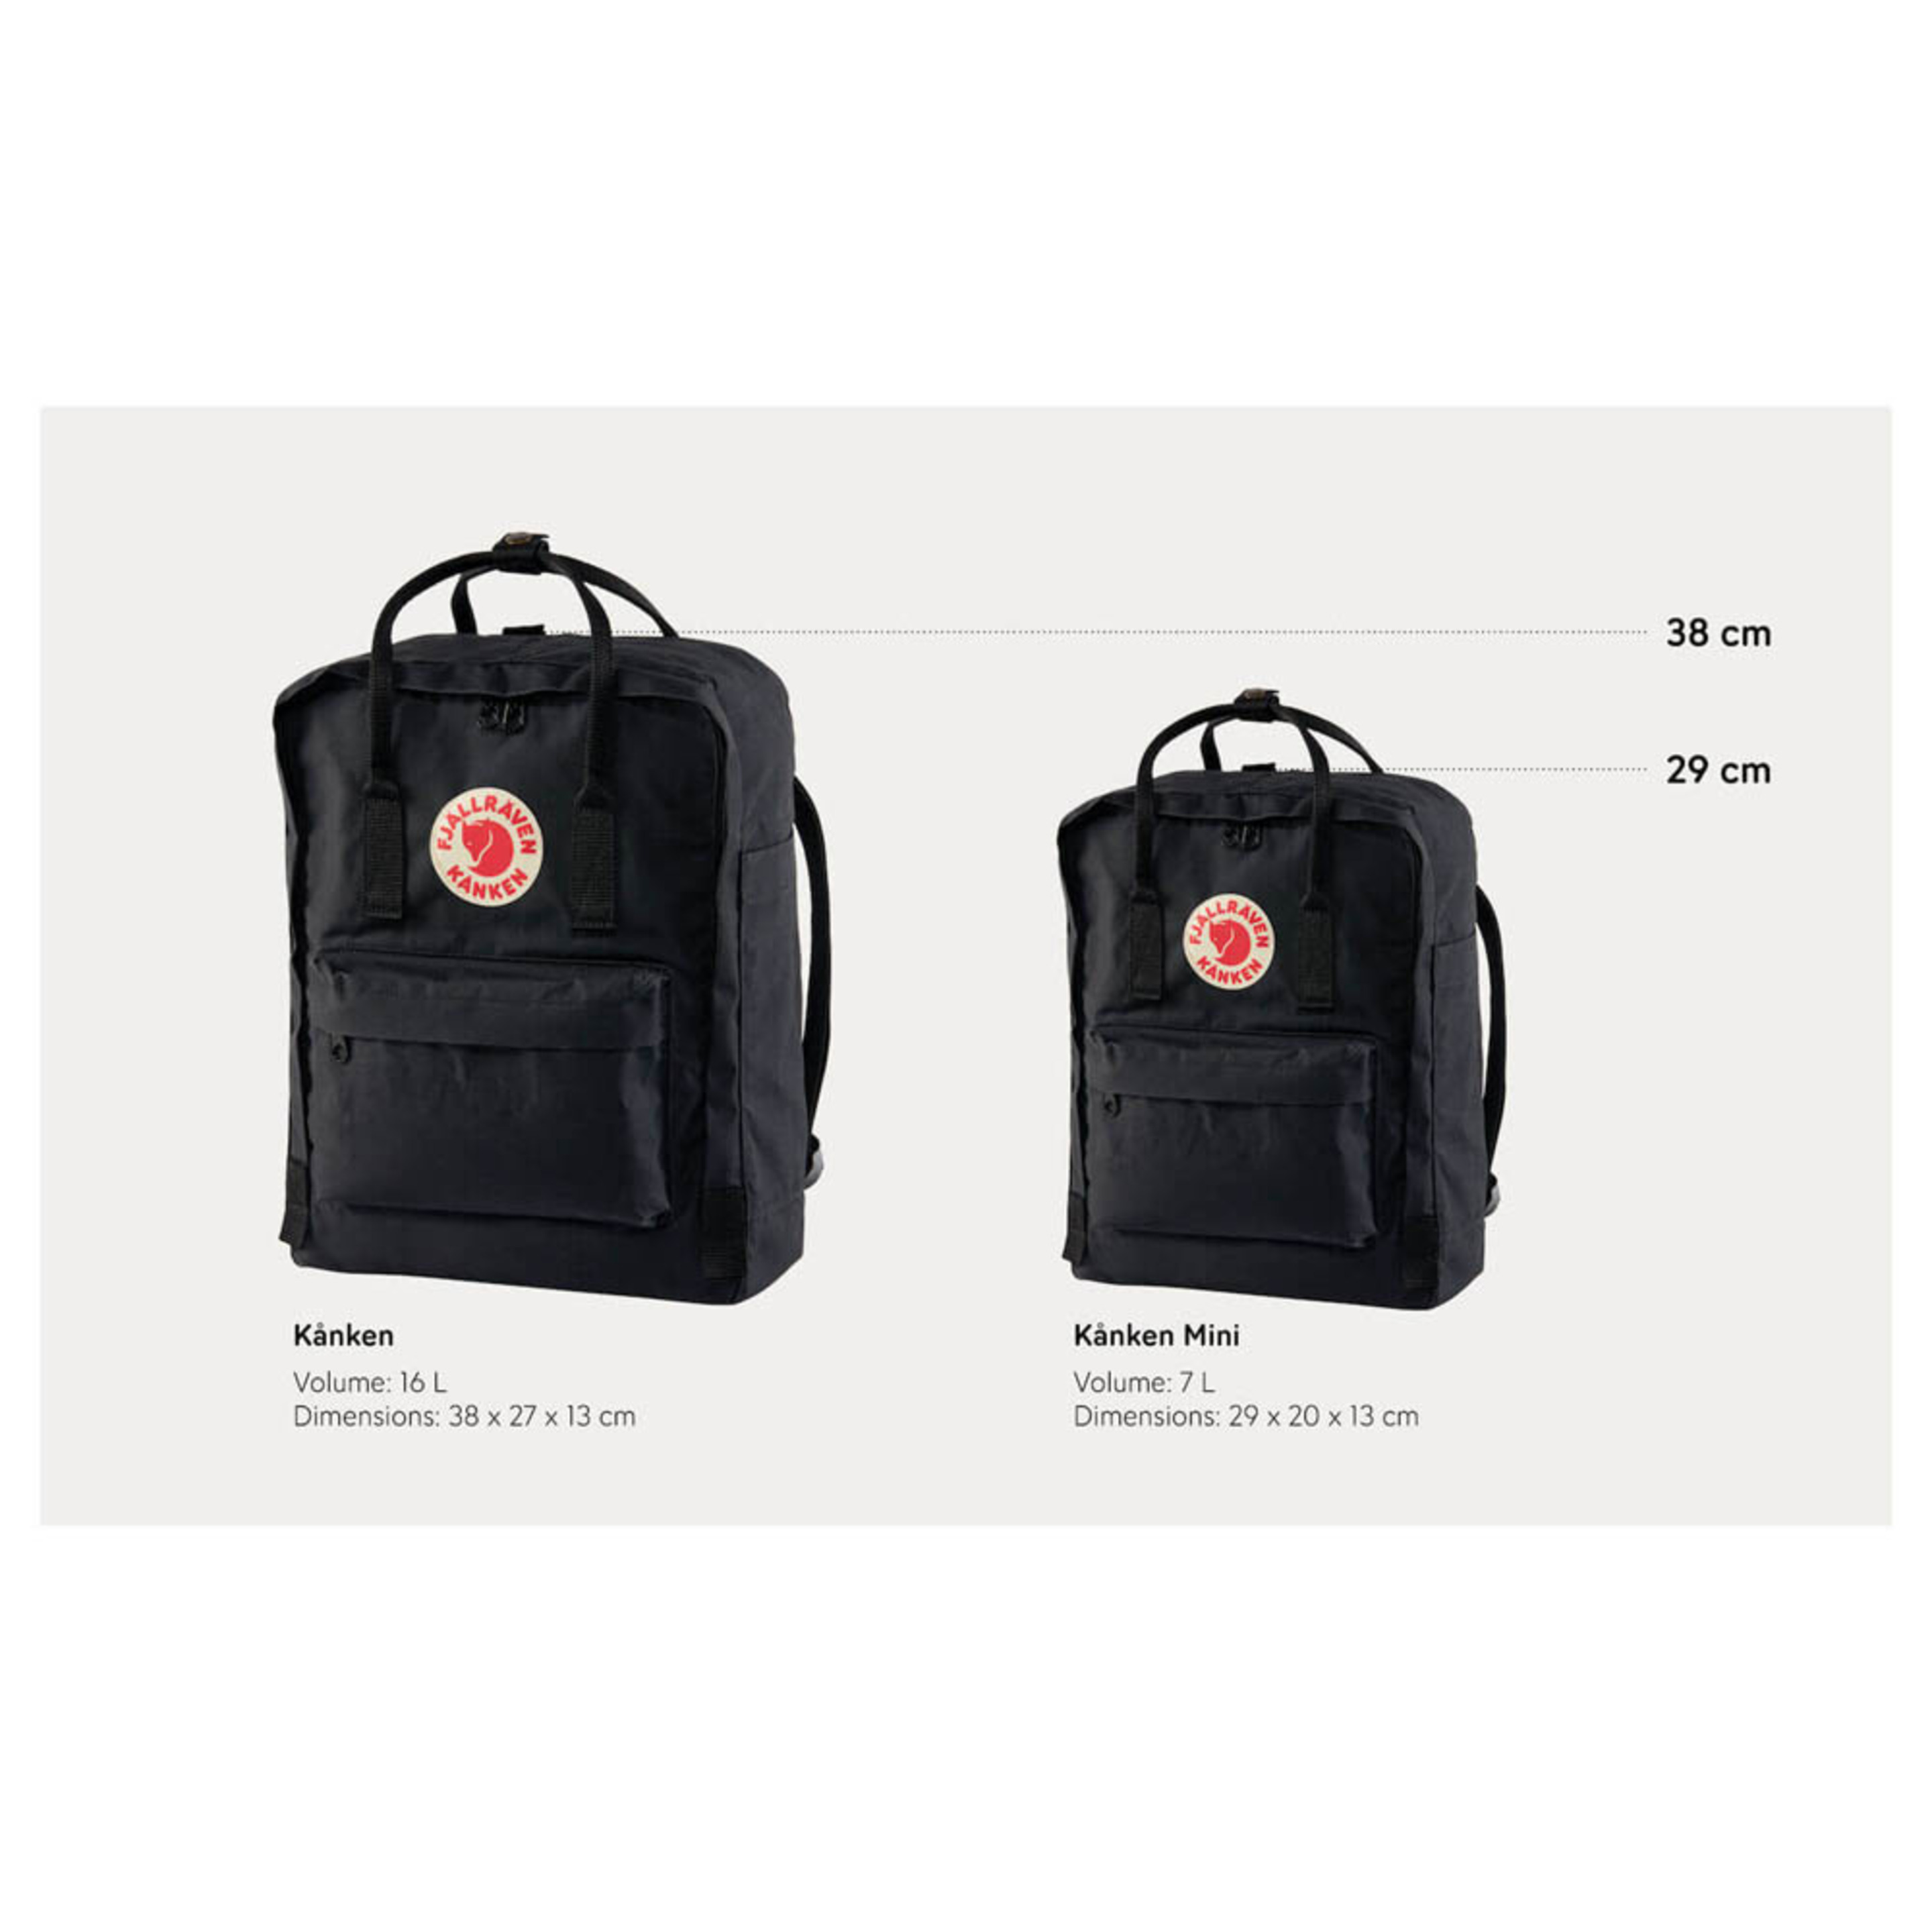 Fjallraven Kanken Sports Backpack, Unisex-adult, Spicy Orange, One Size - Multicolor  MKP